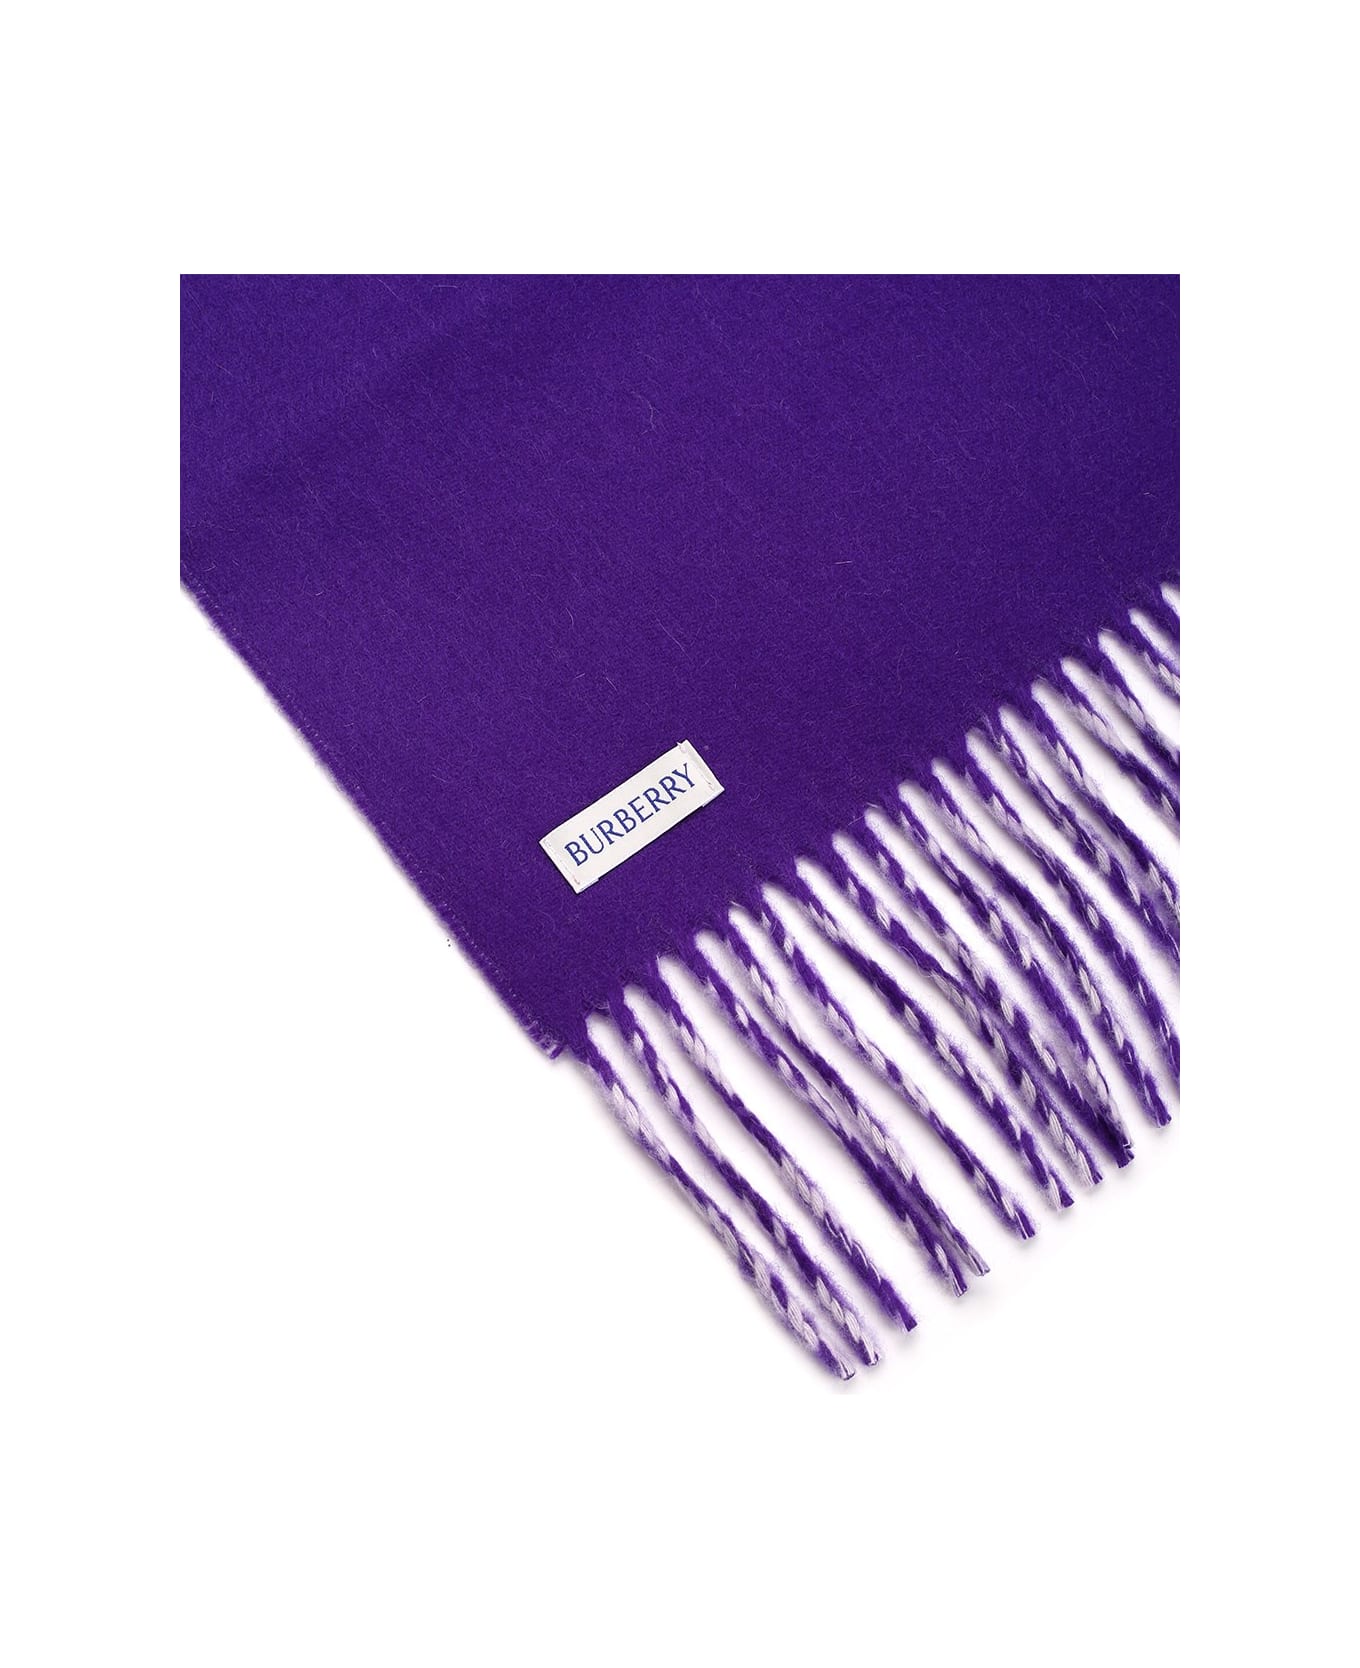 Burberry Purple Cashmere Scarf - Multicolor